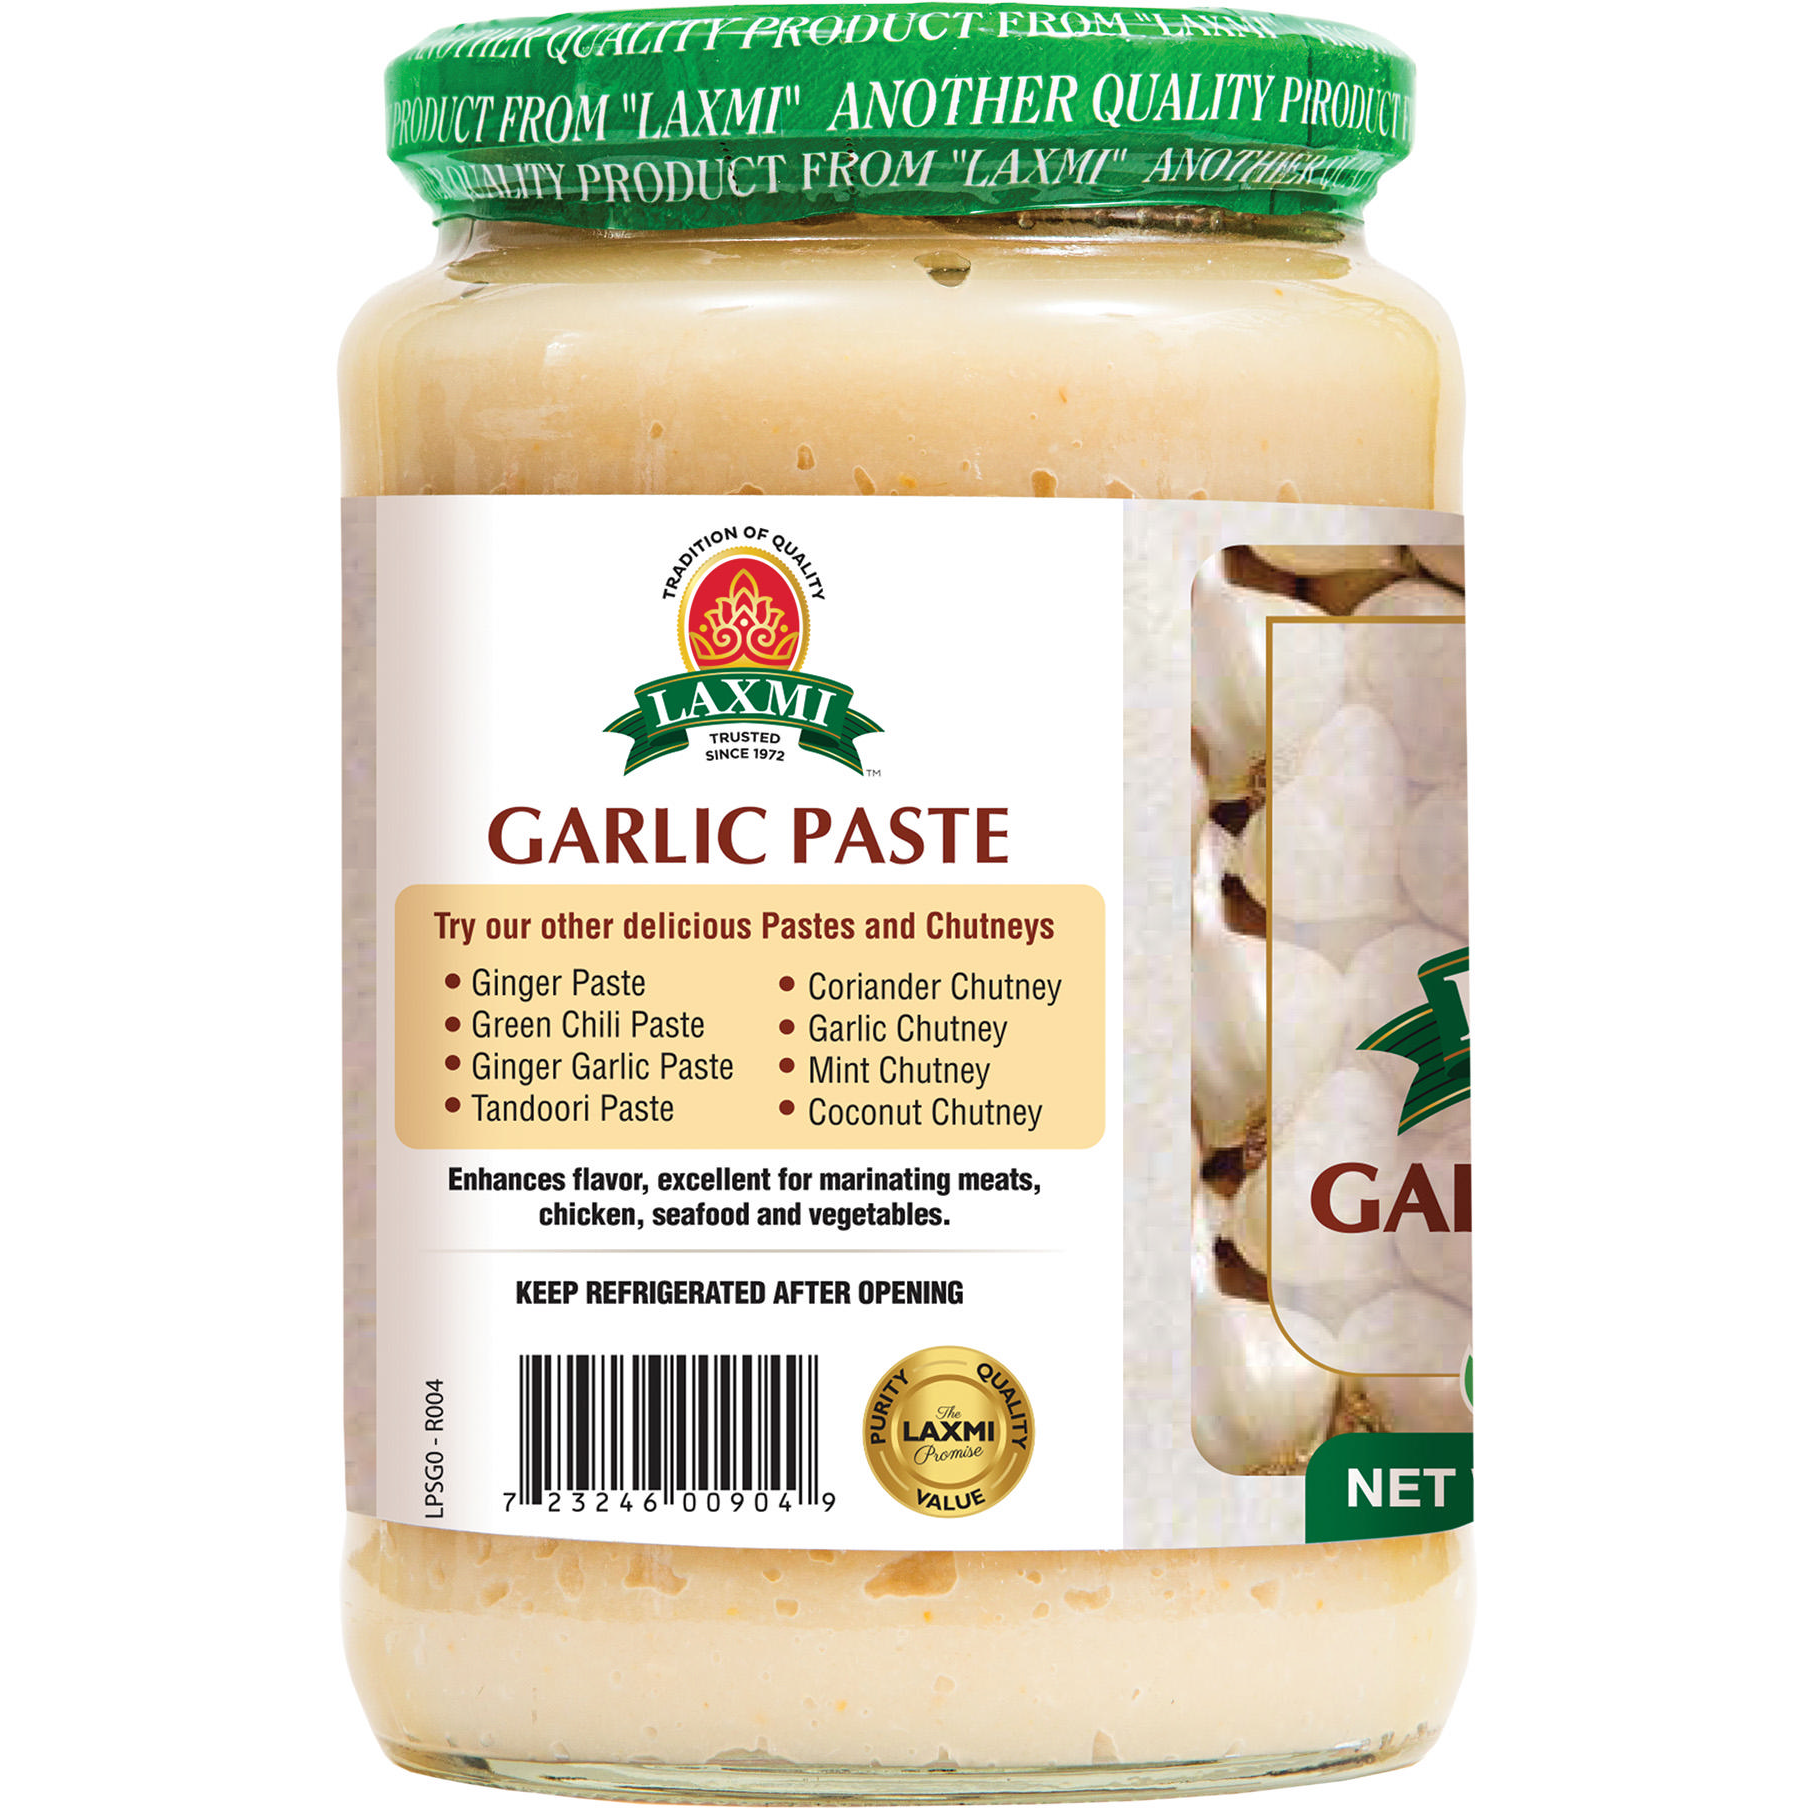 Laxmi Garlic Paste - 24 Oz (680 Gm)